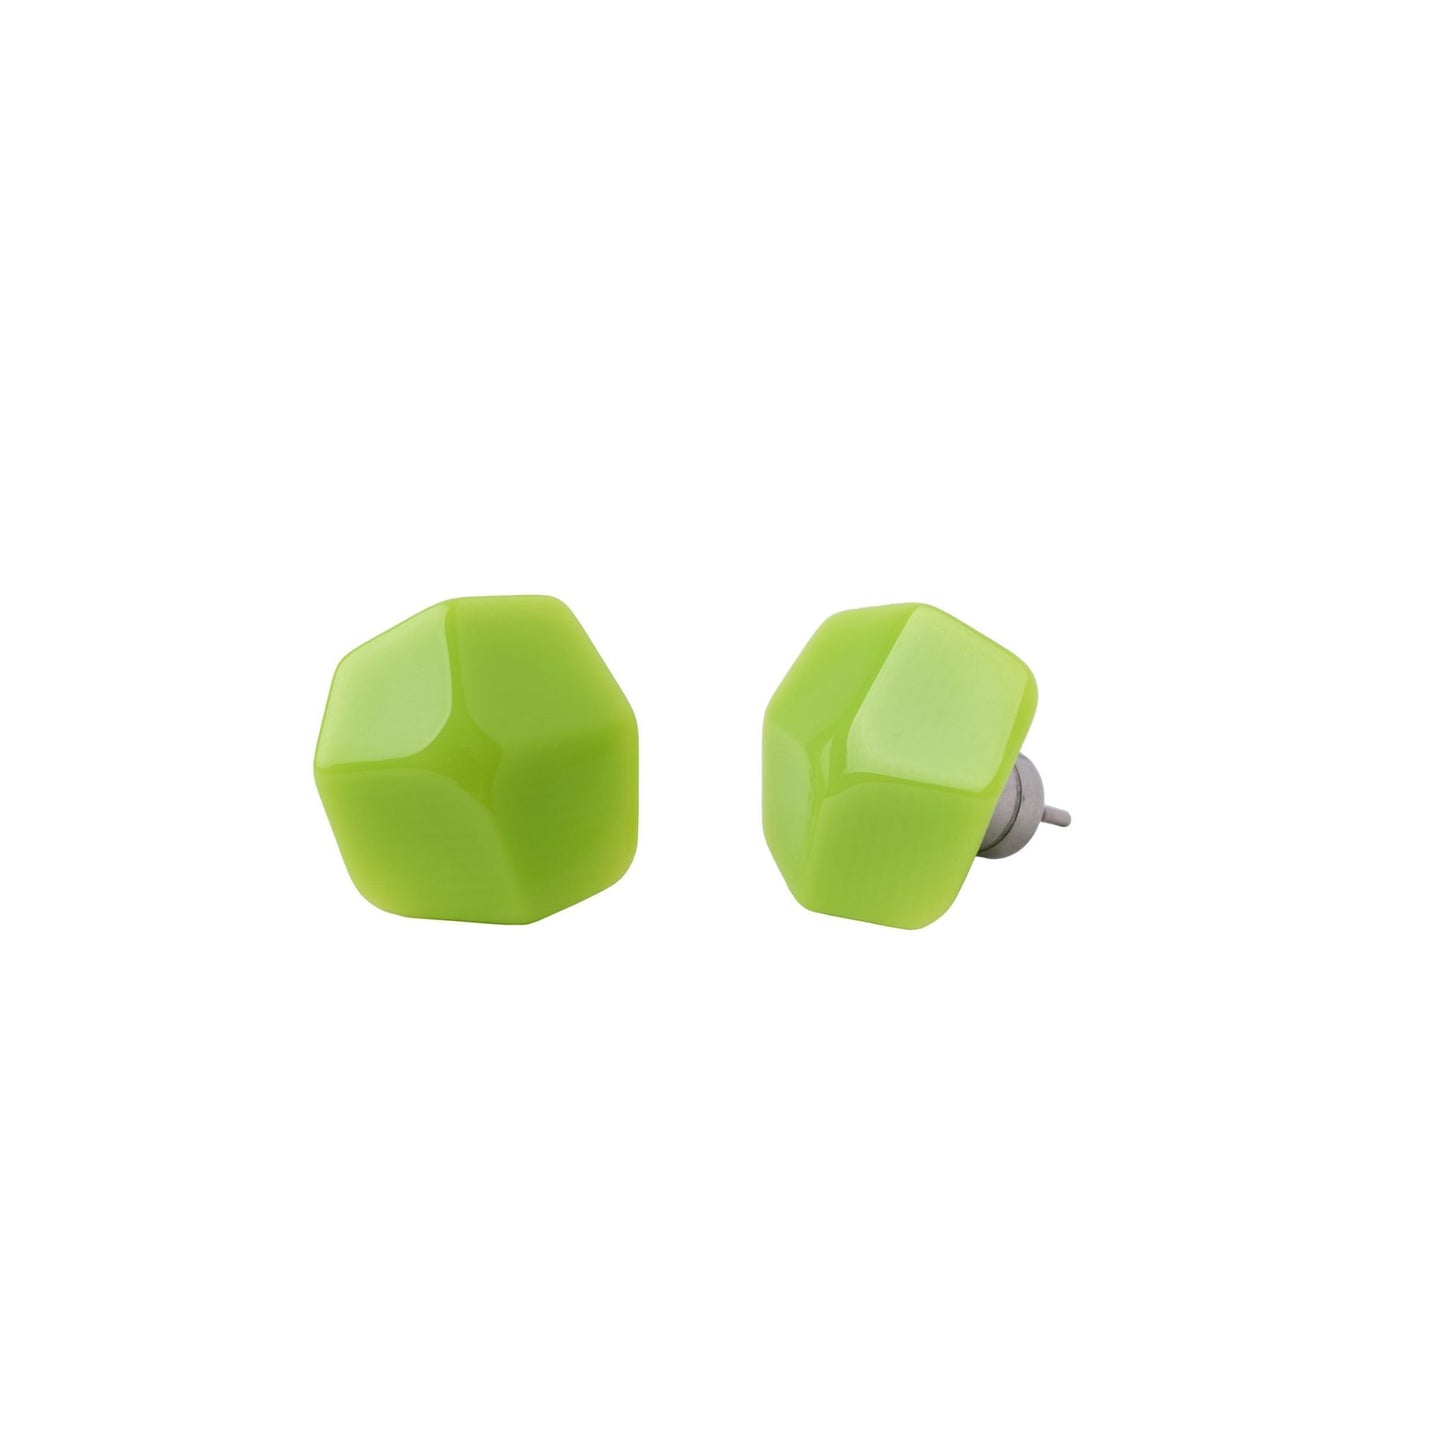 Mini Sculpture Stud Earrings in Neon Green